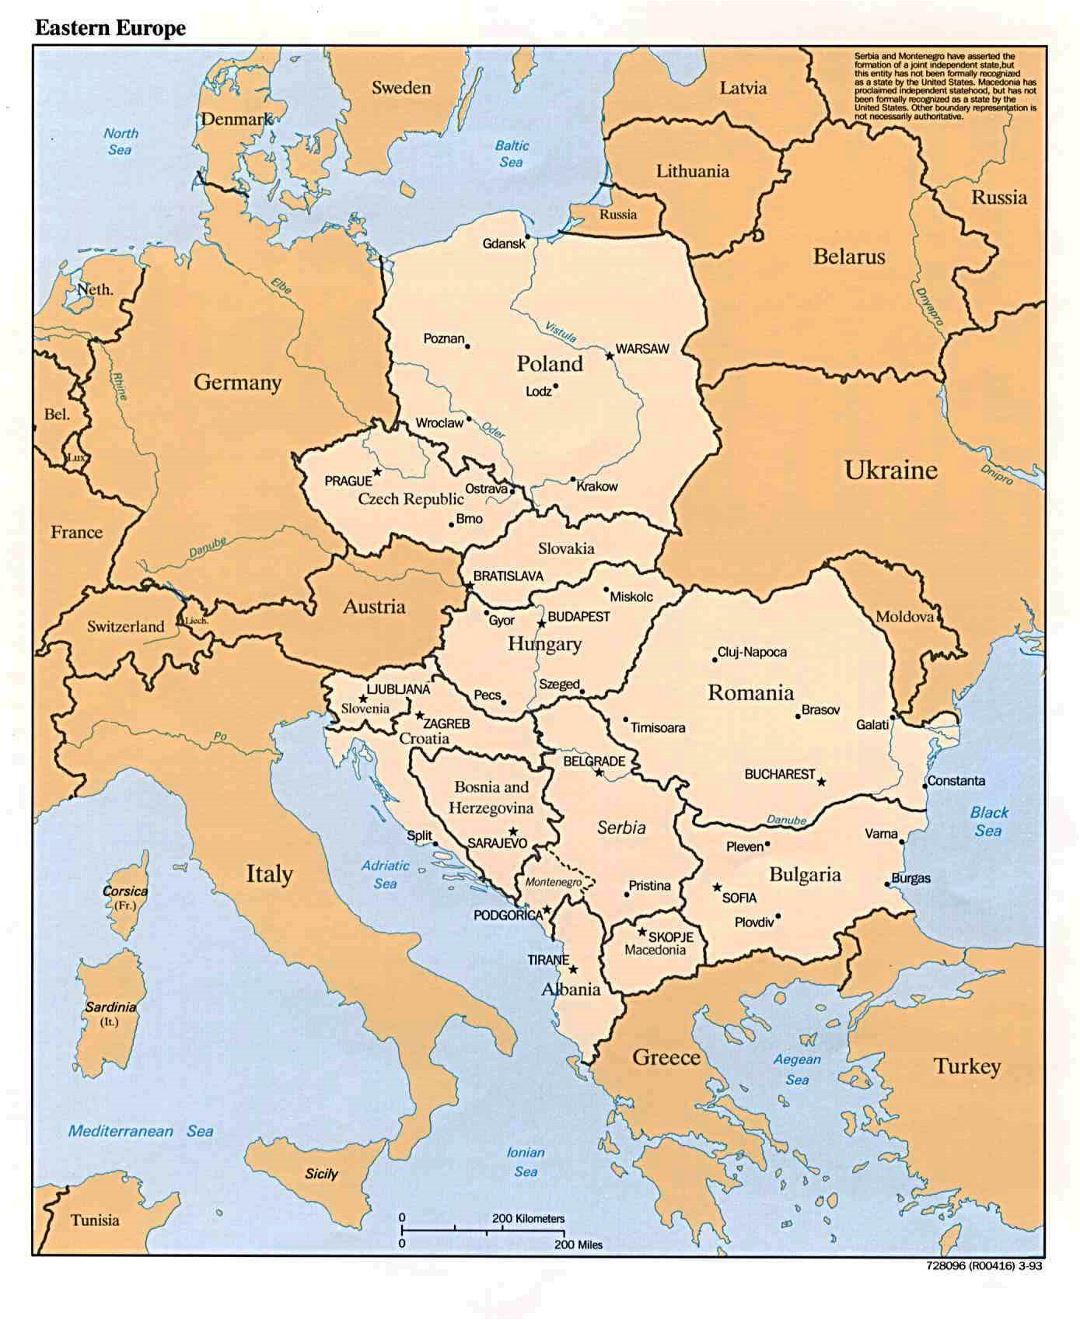 Подробная политическая карта Восточной Европы - 1993